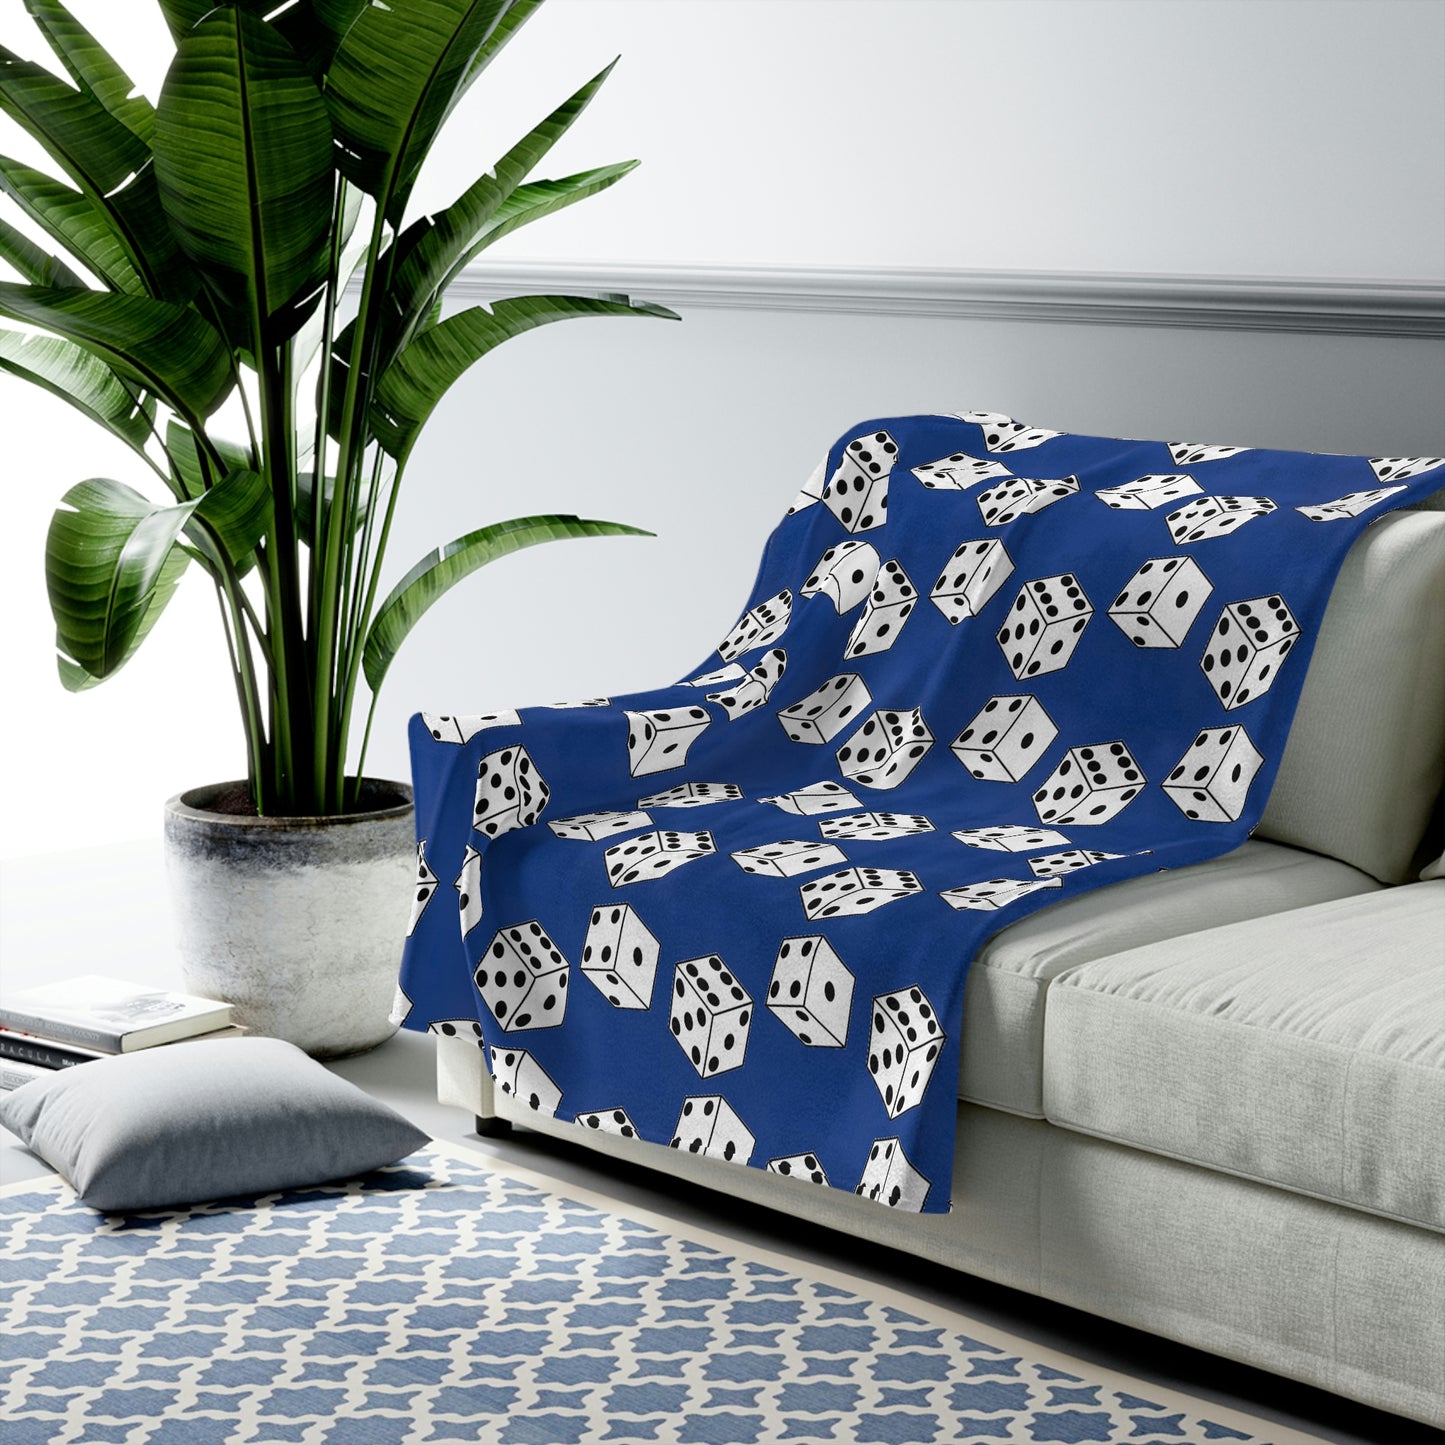 Dice Pattern Velveteen Plush Blanket